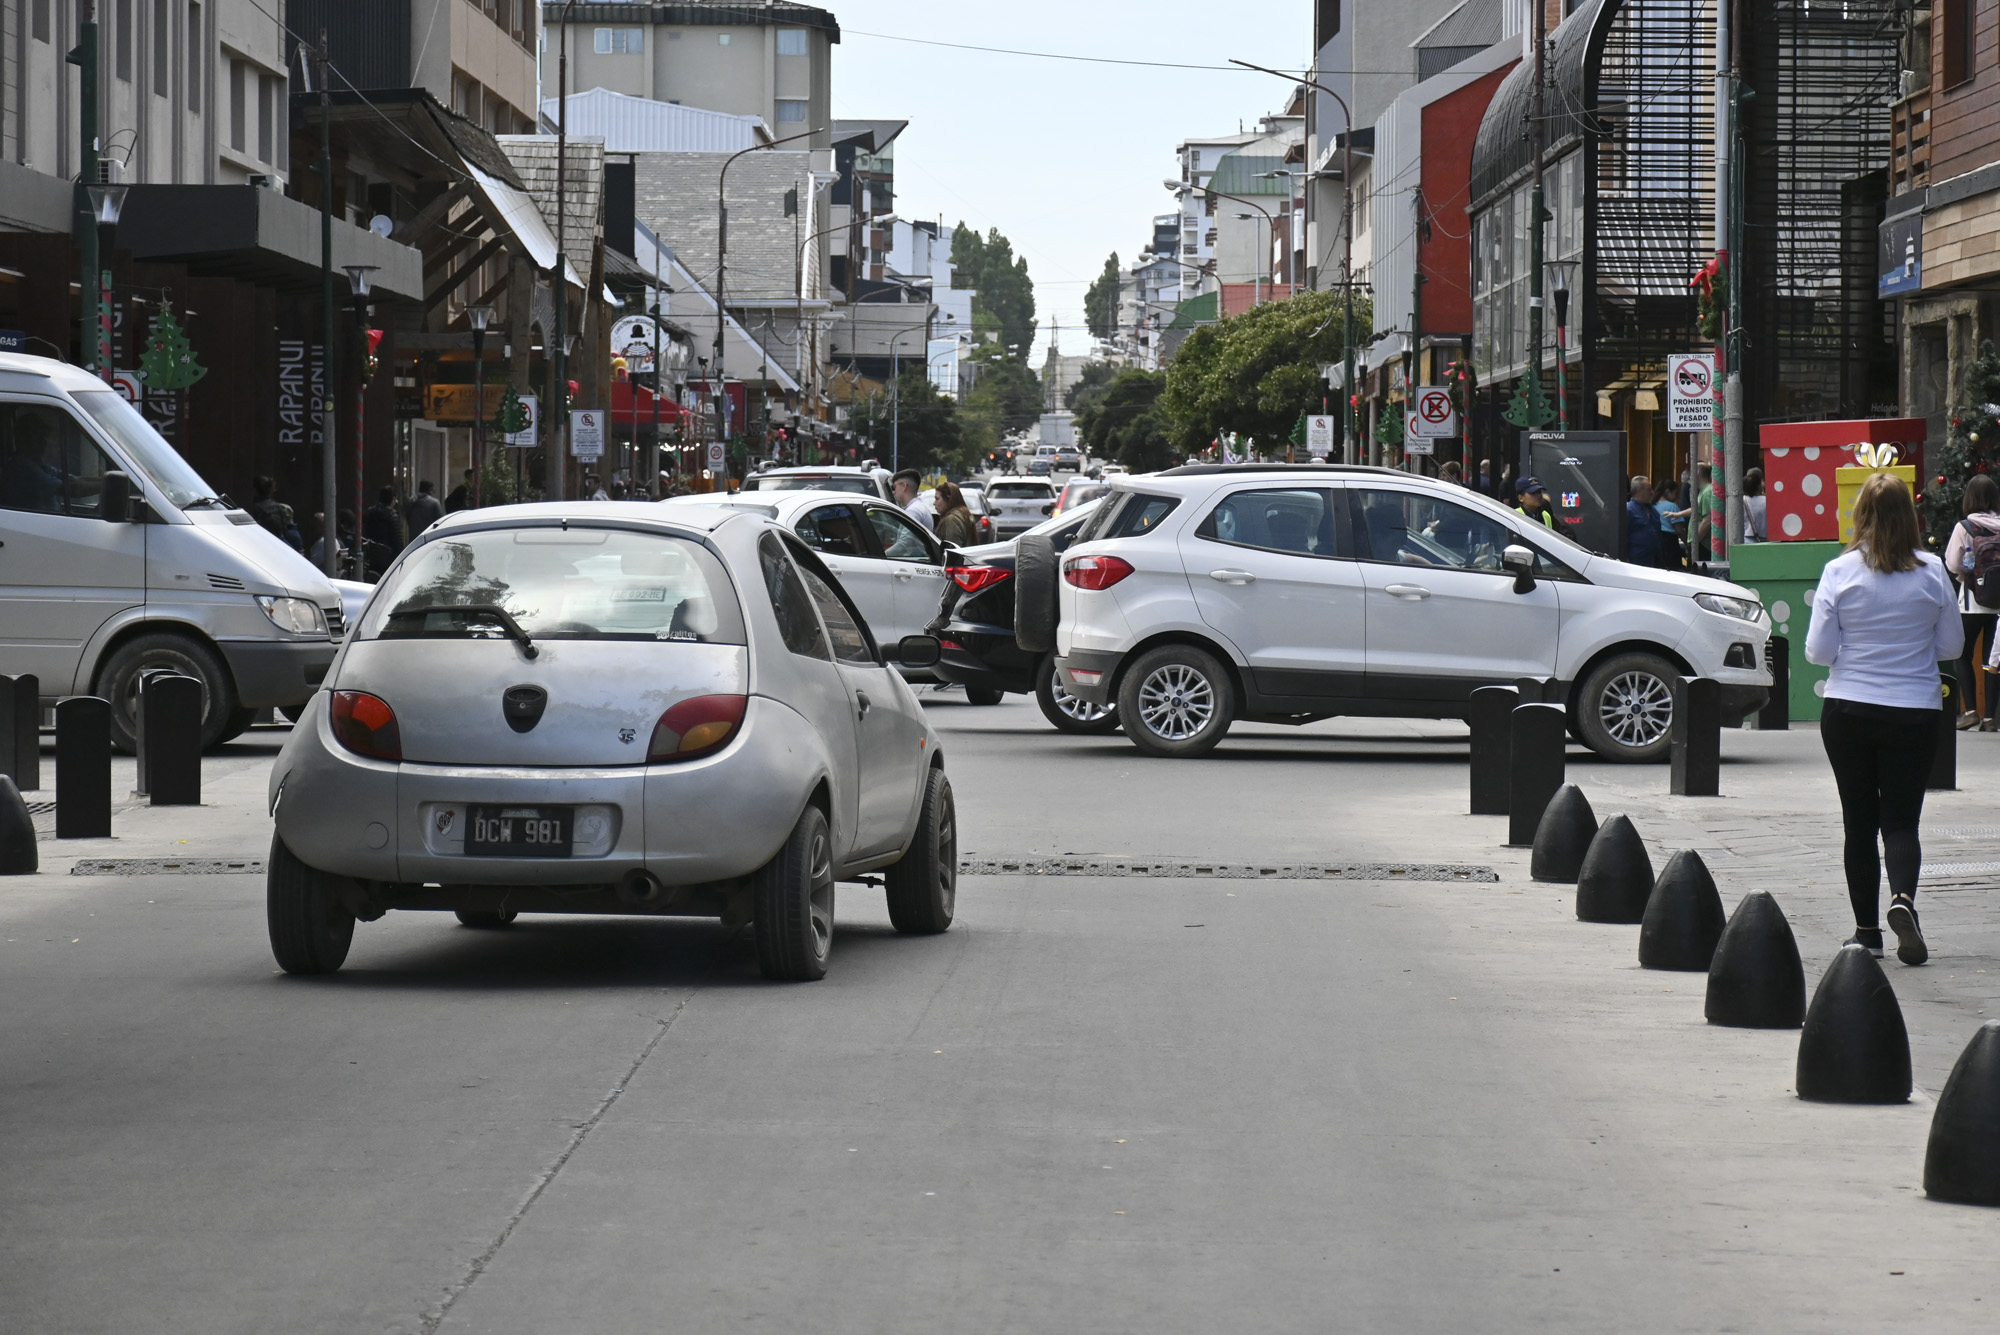 ¡Atención! La principal calle comercial de Bariloche, Mitre, cambiará de sentido en poco tiempo. Foto: Chino Leiva